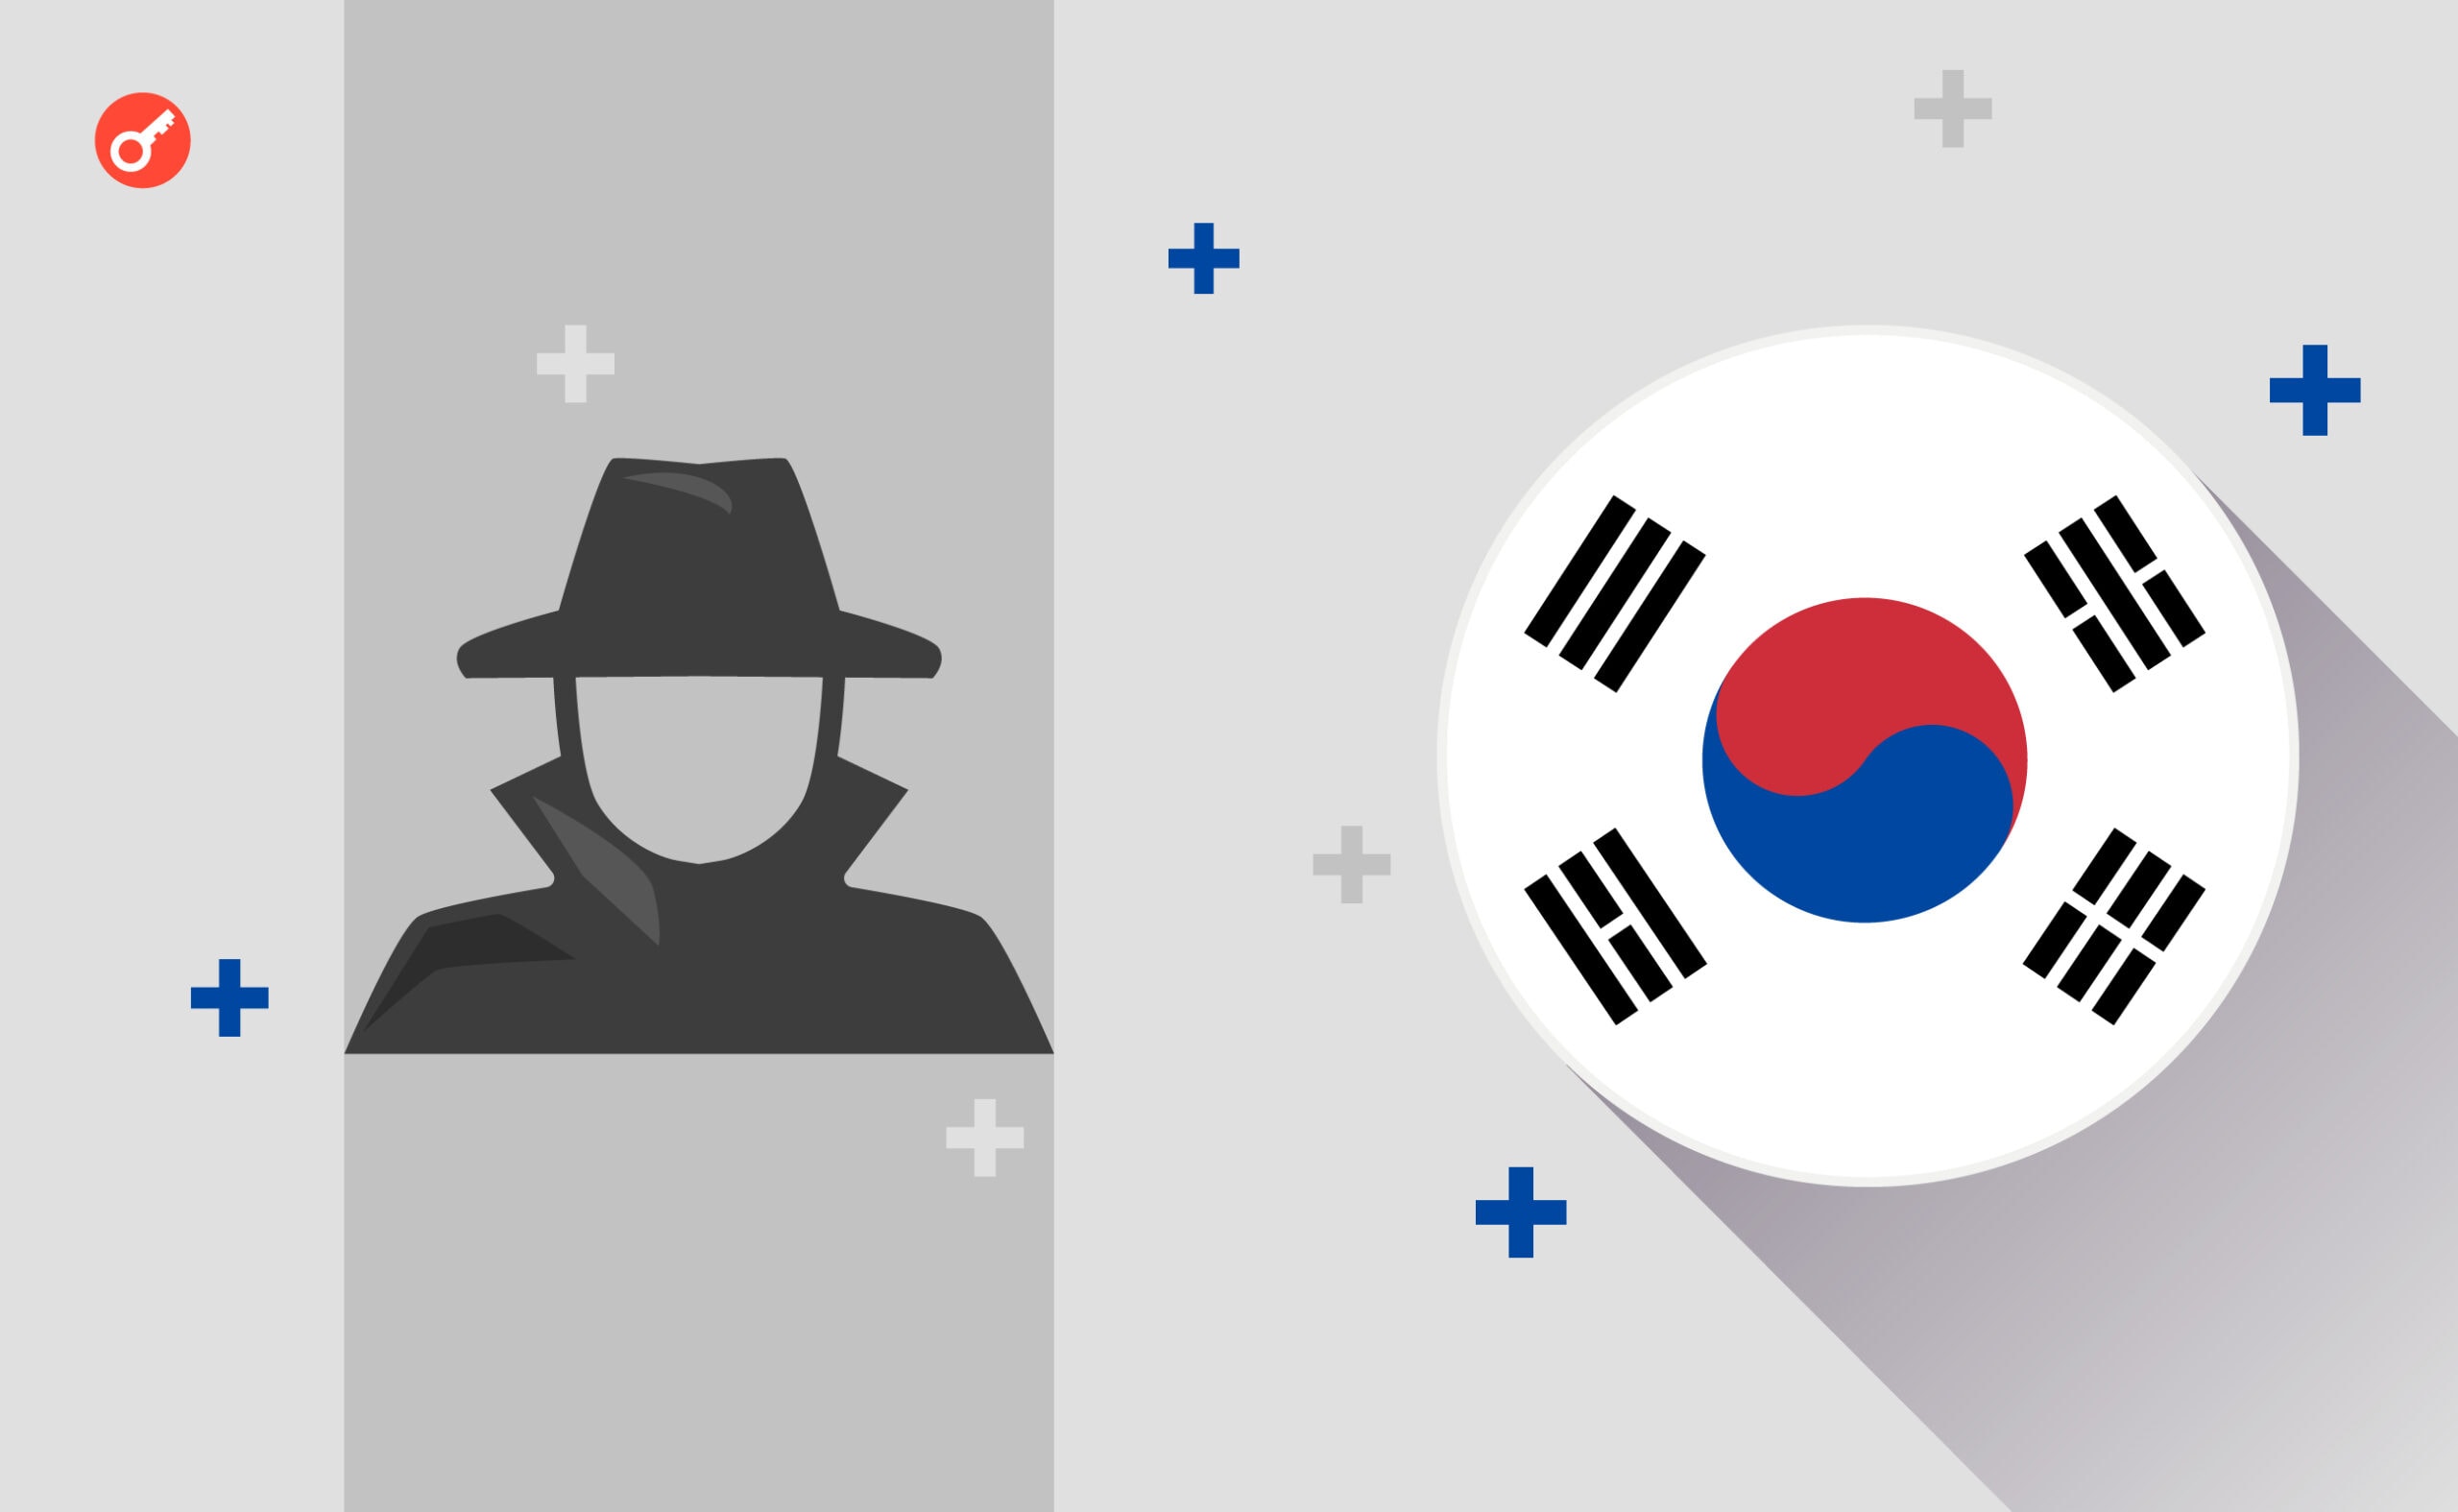 Władze Korei Południowej ujawniają schemat Ponziego o wartości 330 milionów dolarów. Główny kolaż wiadomości.